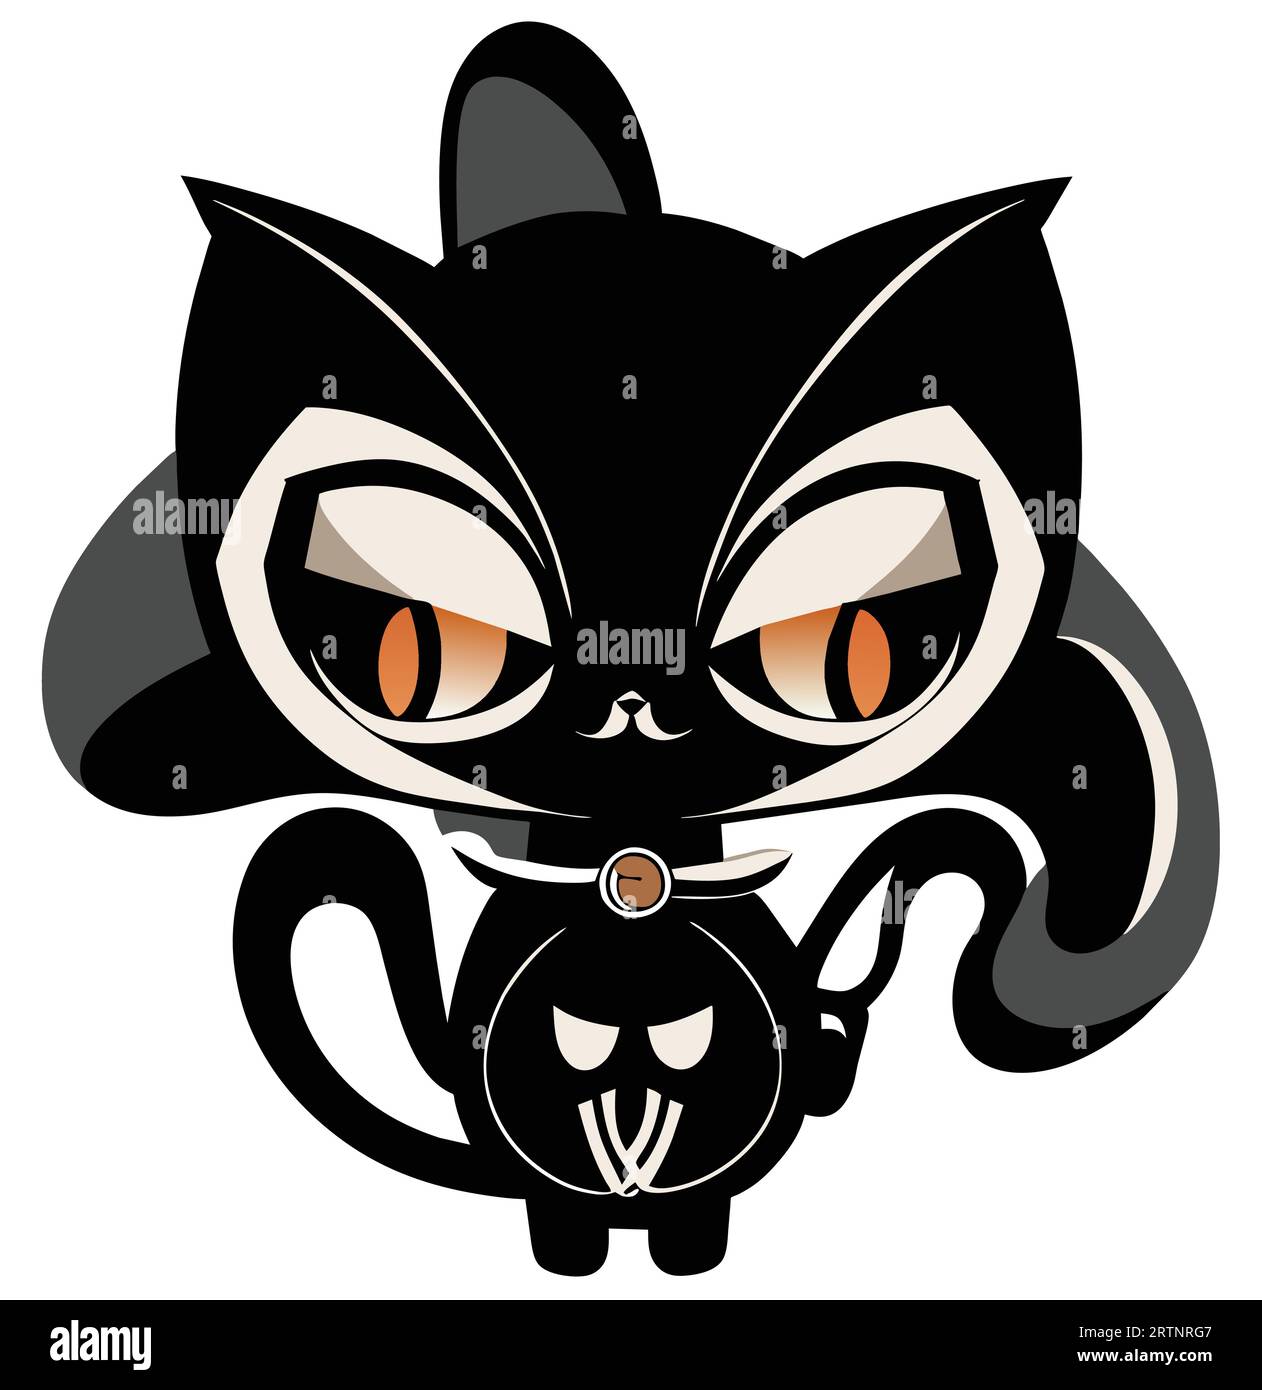 Obtenez des frissons avec ce vecteur de chat noir sinistre. Parfait pour les designs d'Halloween. De haute qualité et éditable.Illustration vectorielle de chat noir Creepy Illustration de Vecteur